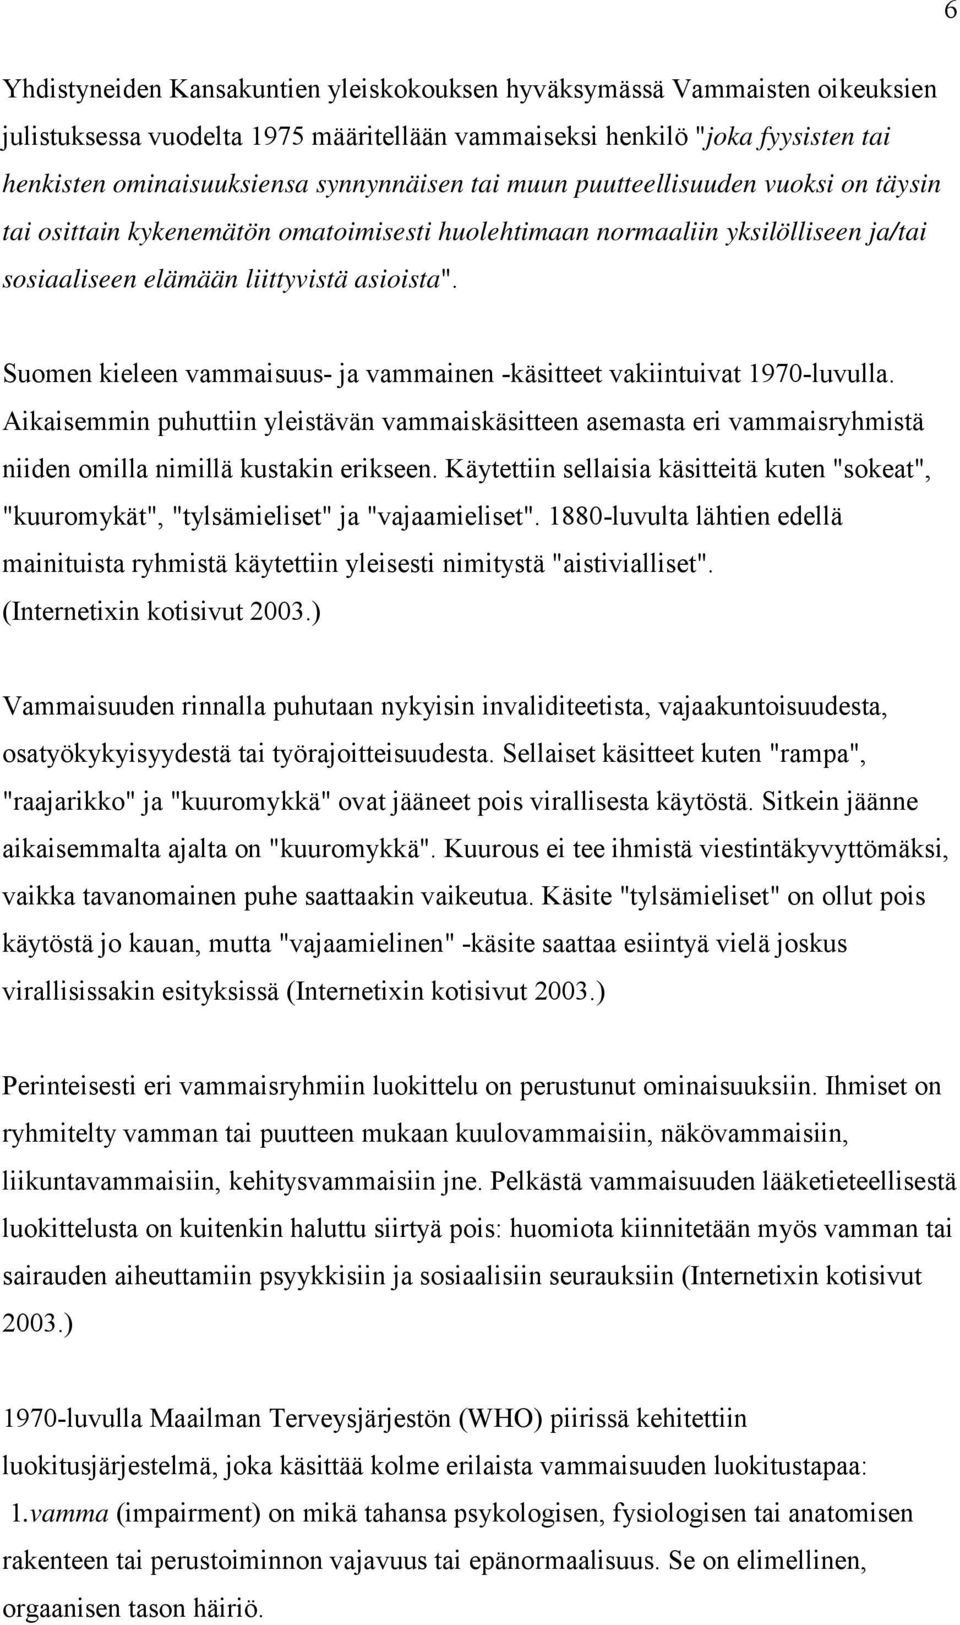 Suomen kieleen vammaisuus- ja vammainen -käsitteet vakiintuivat 1970-luvulla. Aikaisemmin puhuttiin yleistävän vammaiskäsitteen asemasta eri vammaisryhmistä niiden omilla nimillä kustakin erikseen.